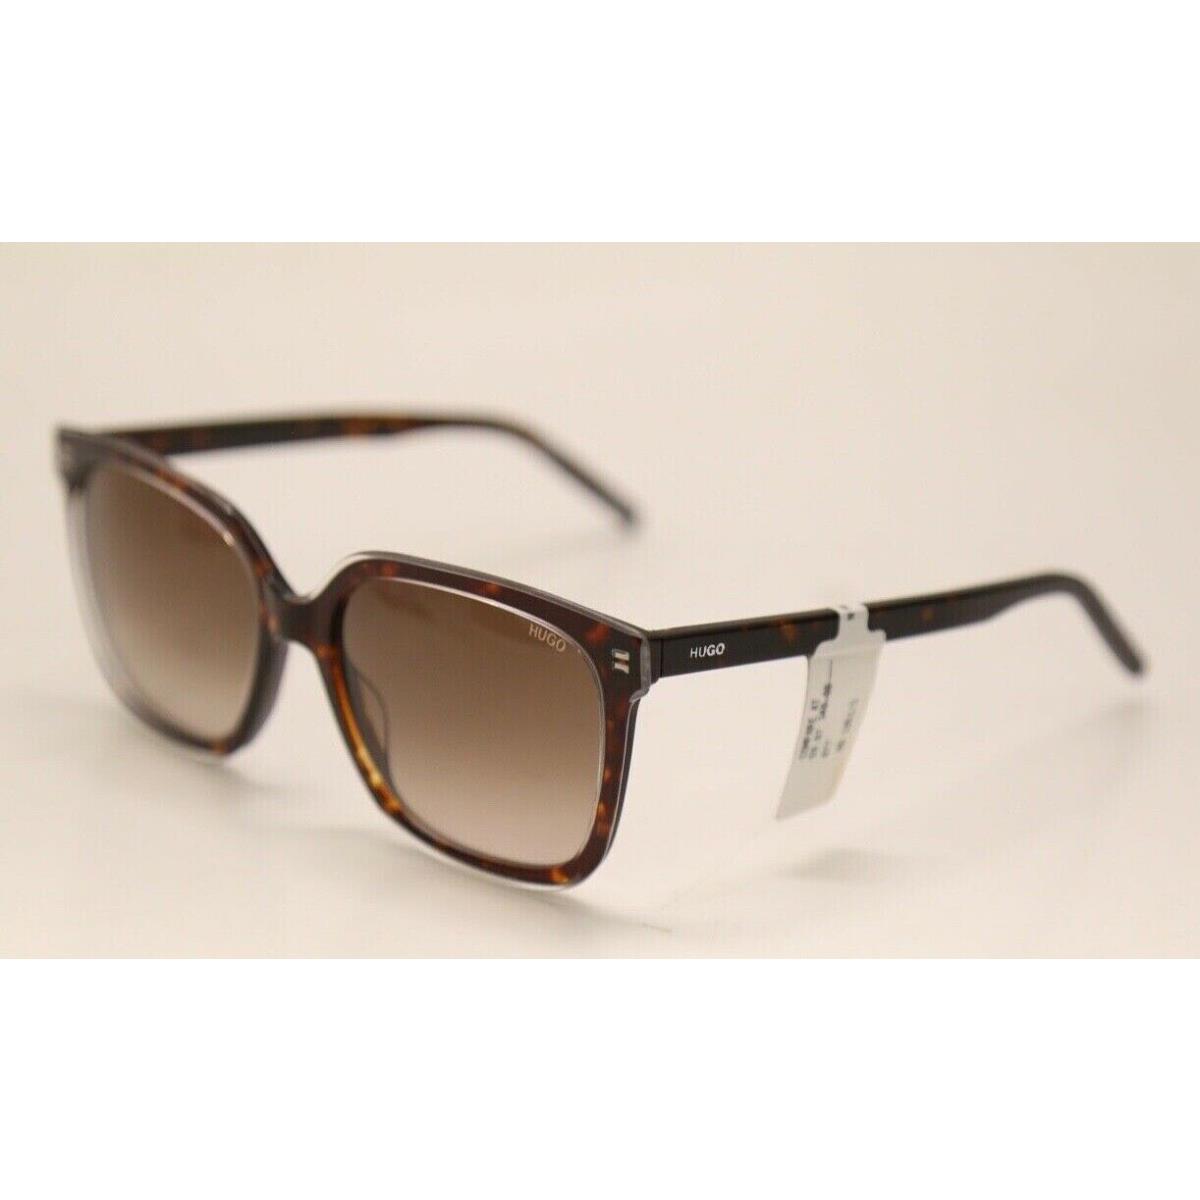 Hugo Boss sunglasses  - Brown Havana Frame, Brown Lens 1